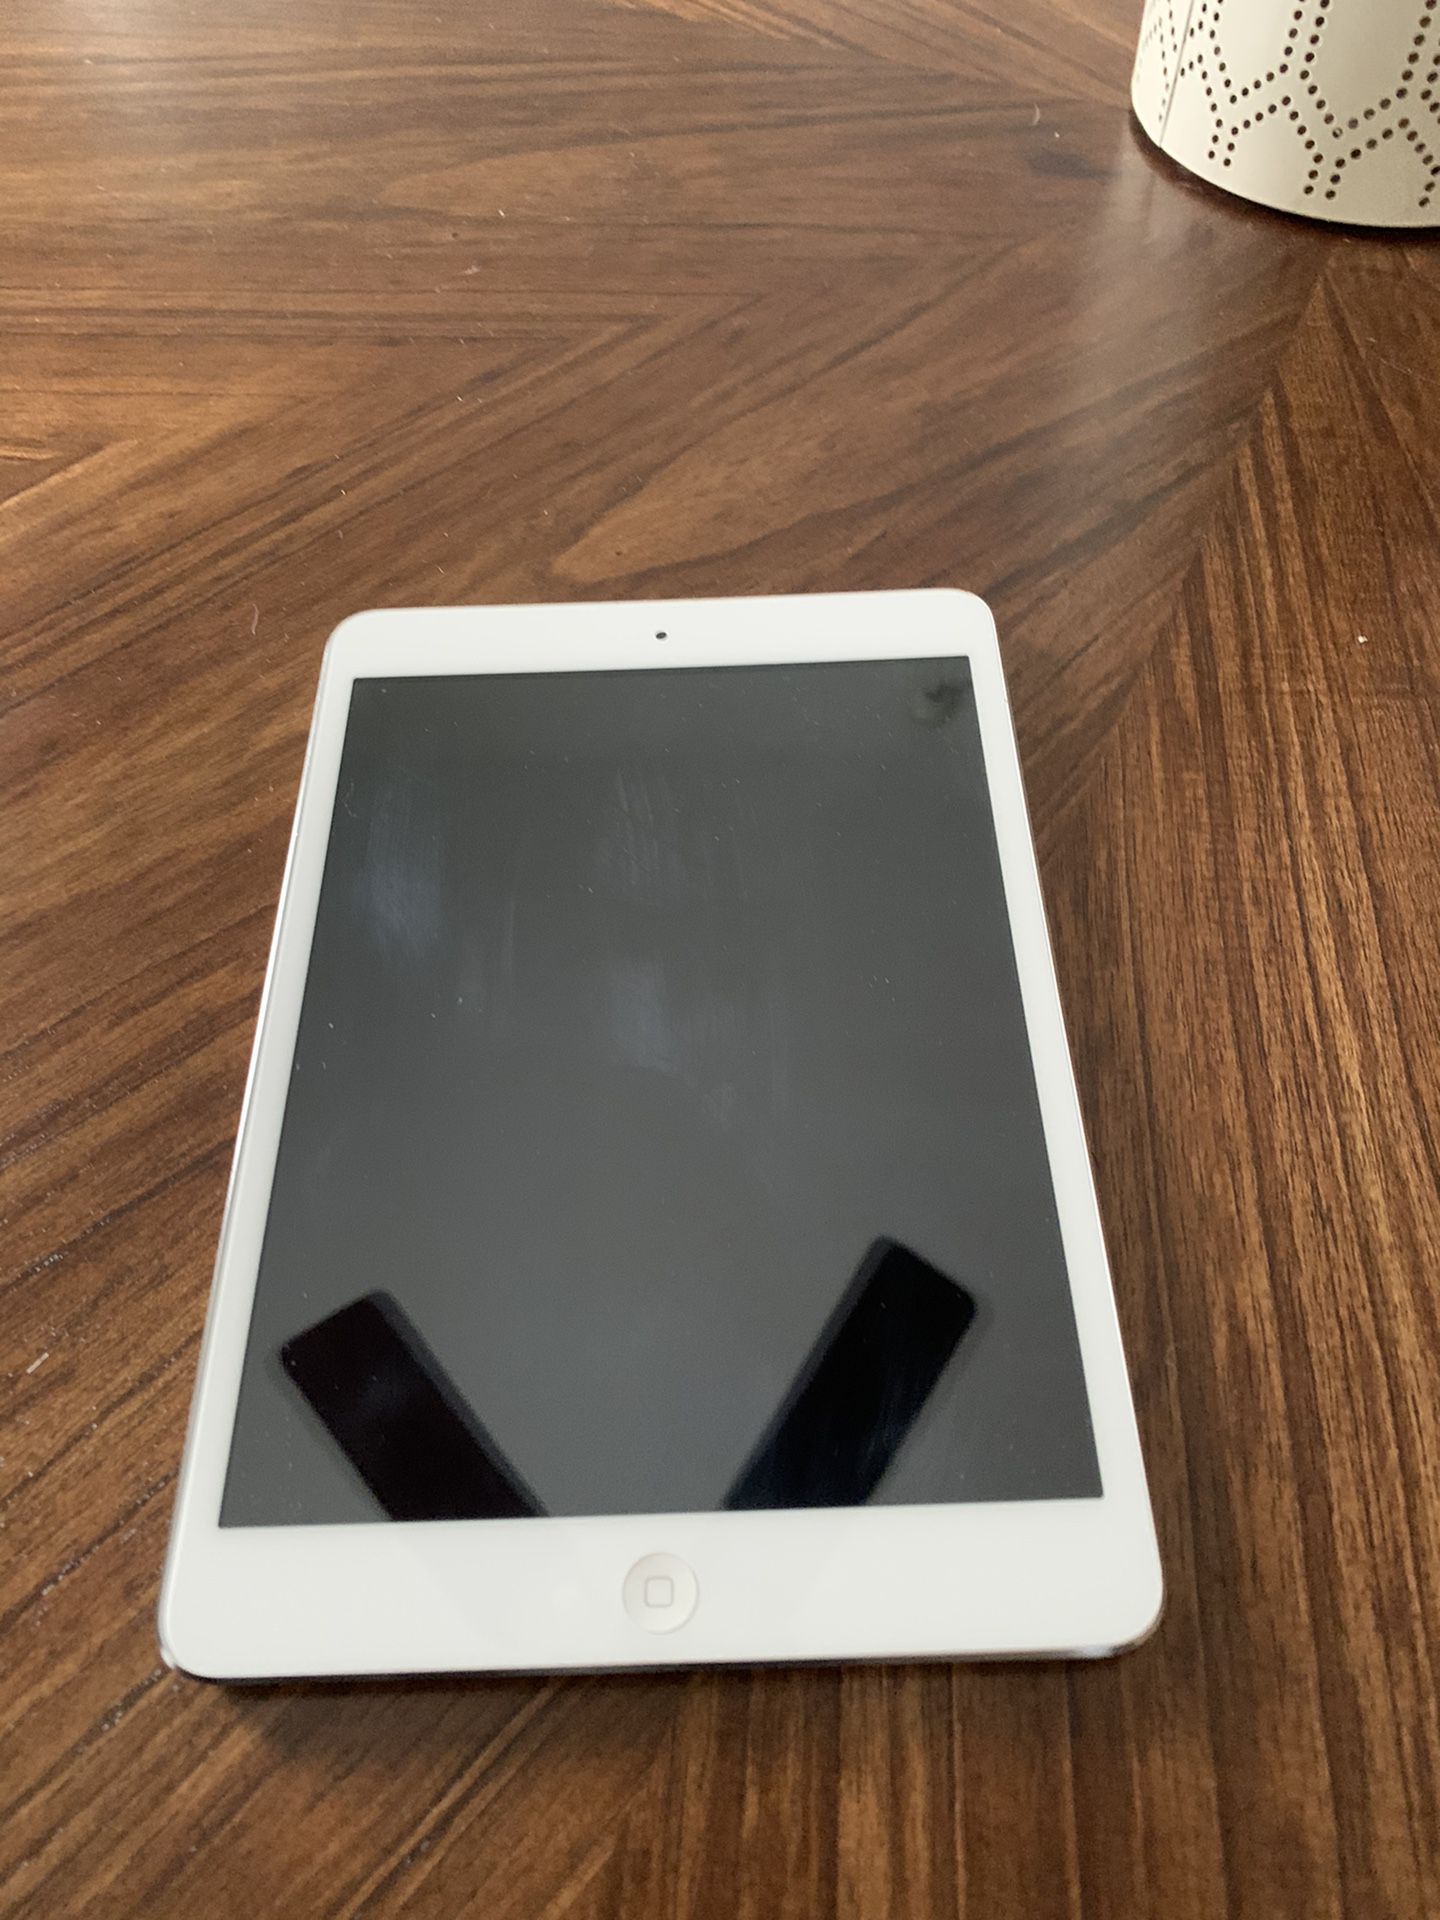 Apple iPad Mini - A1432